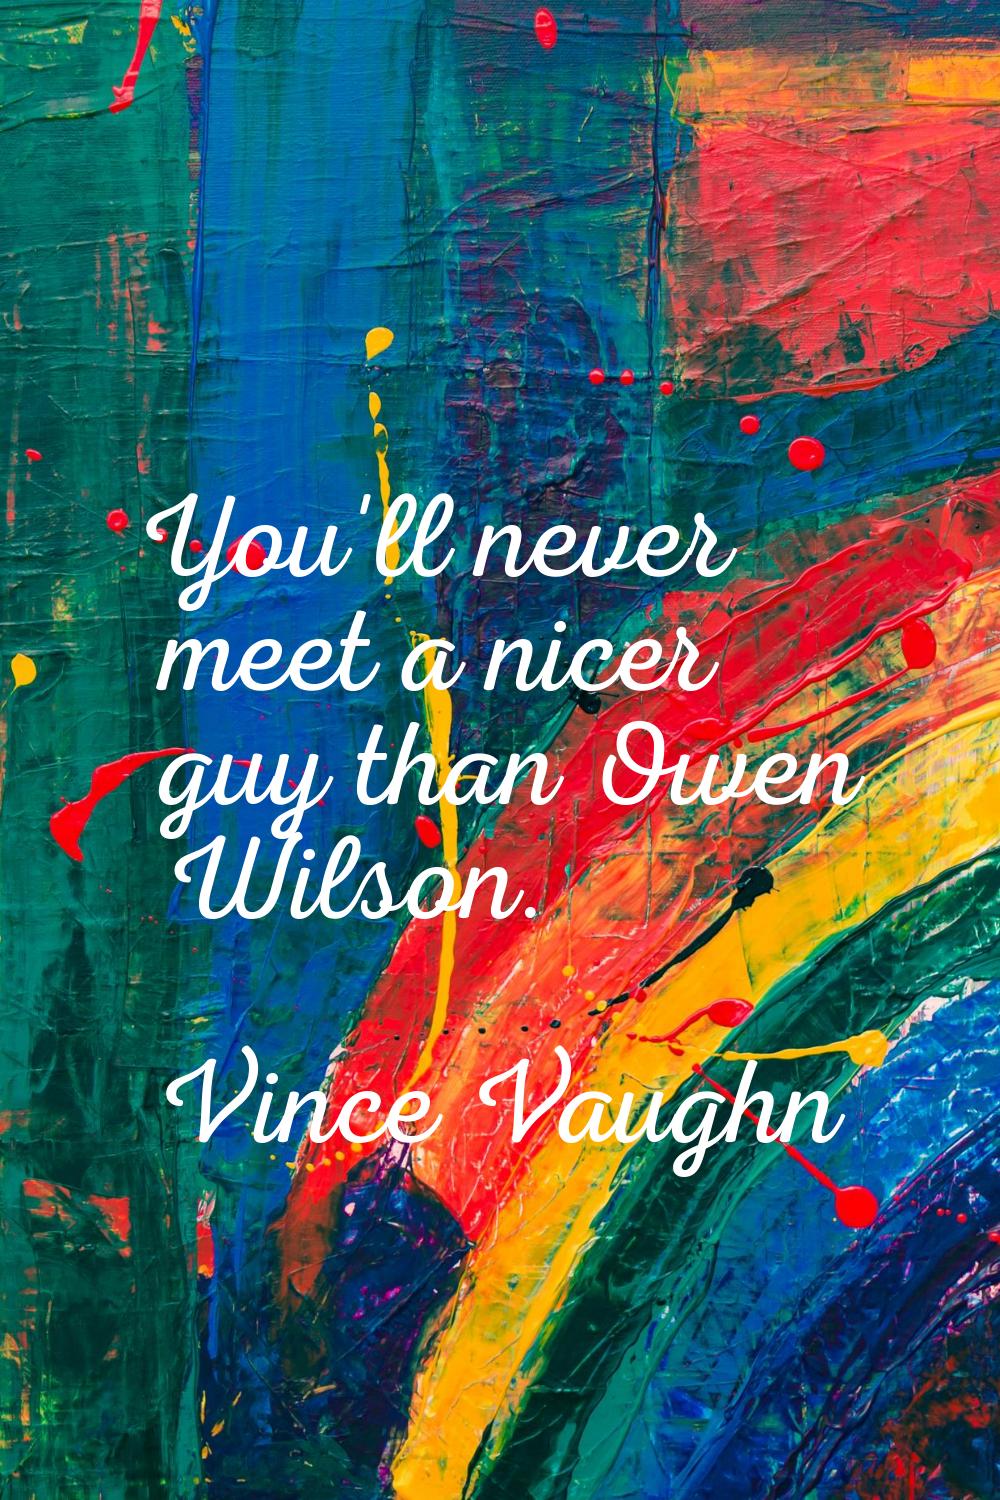 You'll never meet a nicer guy than Owen Wilson.